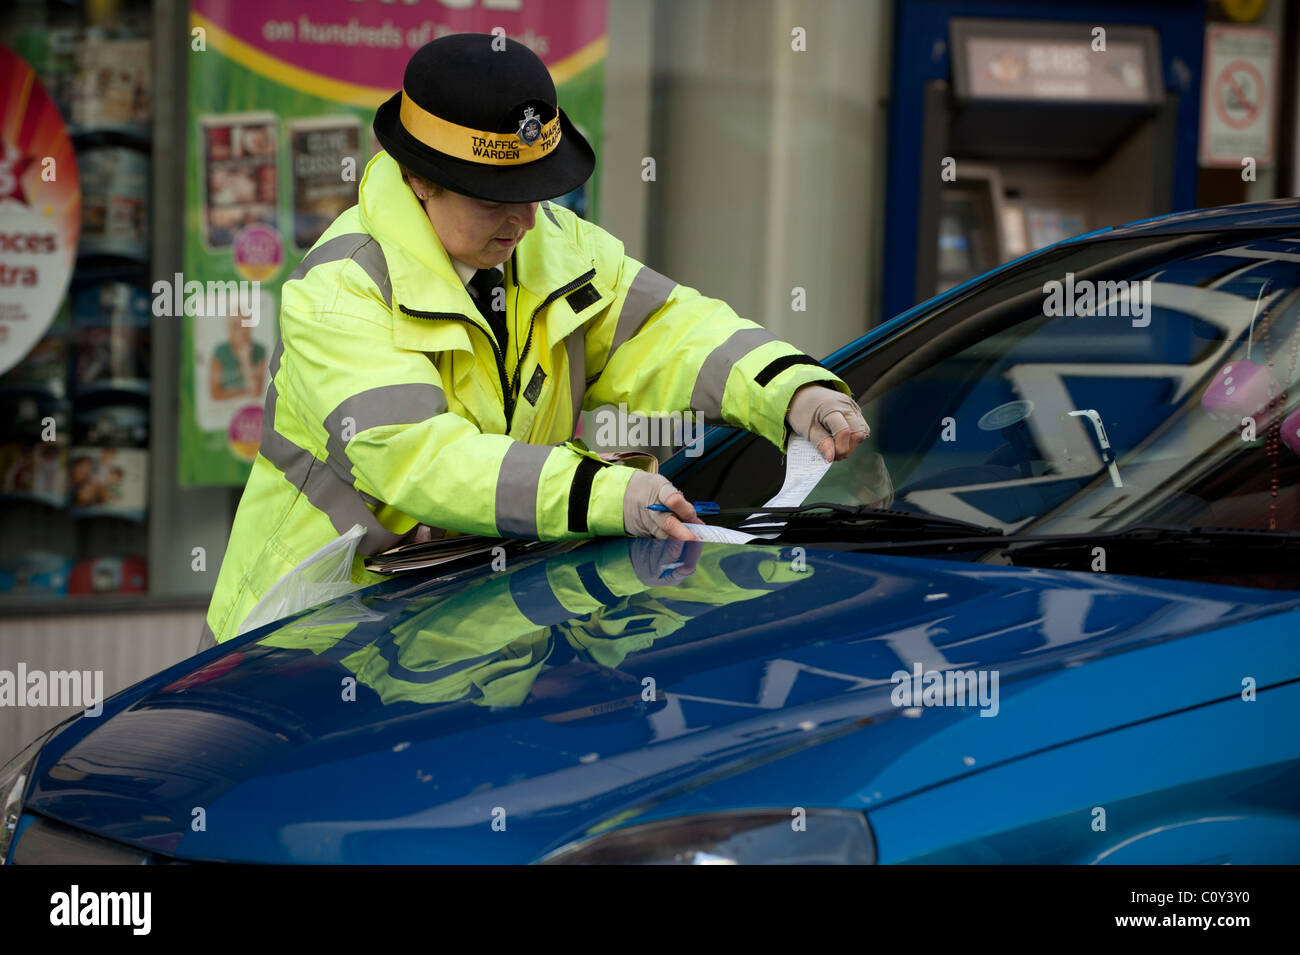 Un gardien de la circulation l'émission d'une peine fixe ticket de parking, UK Banque D'Images